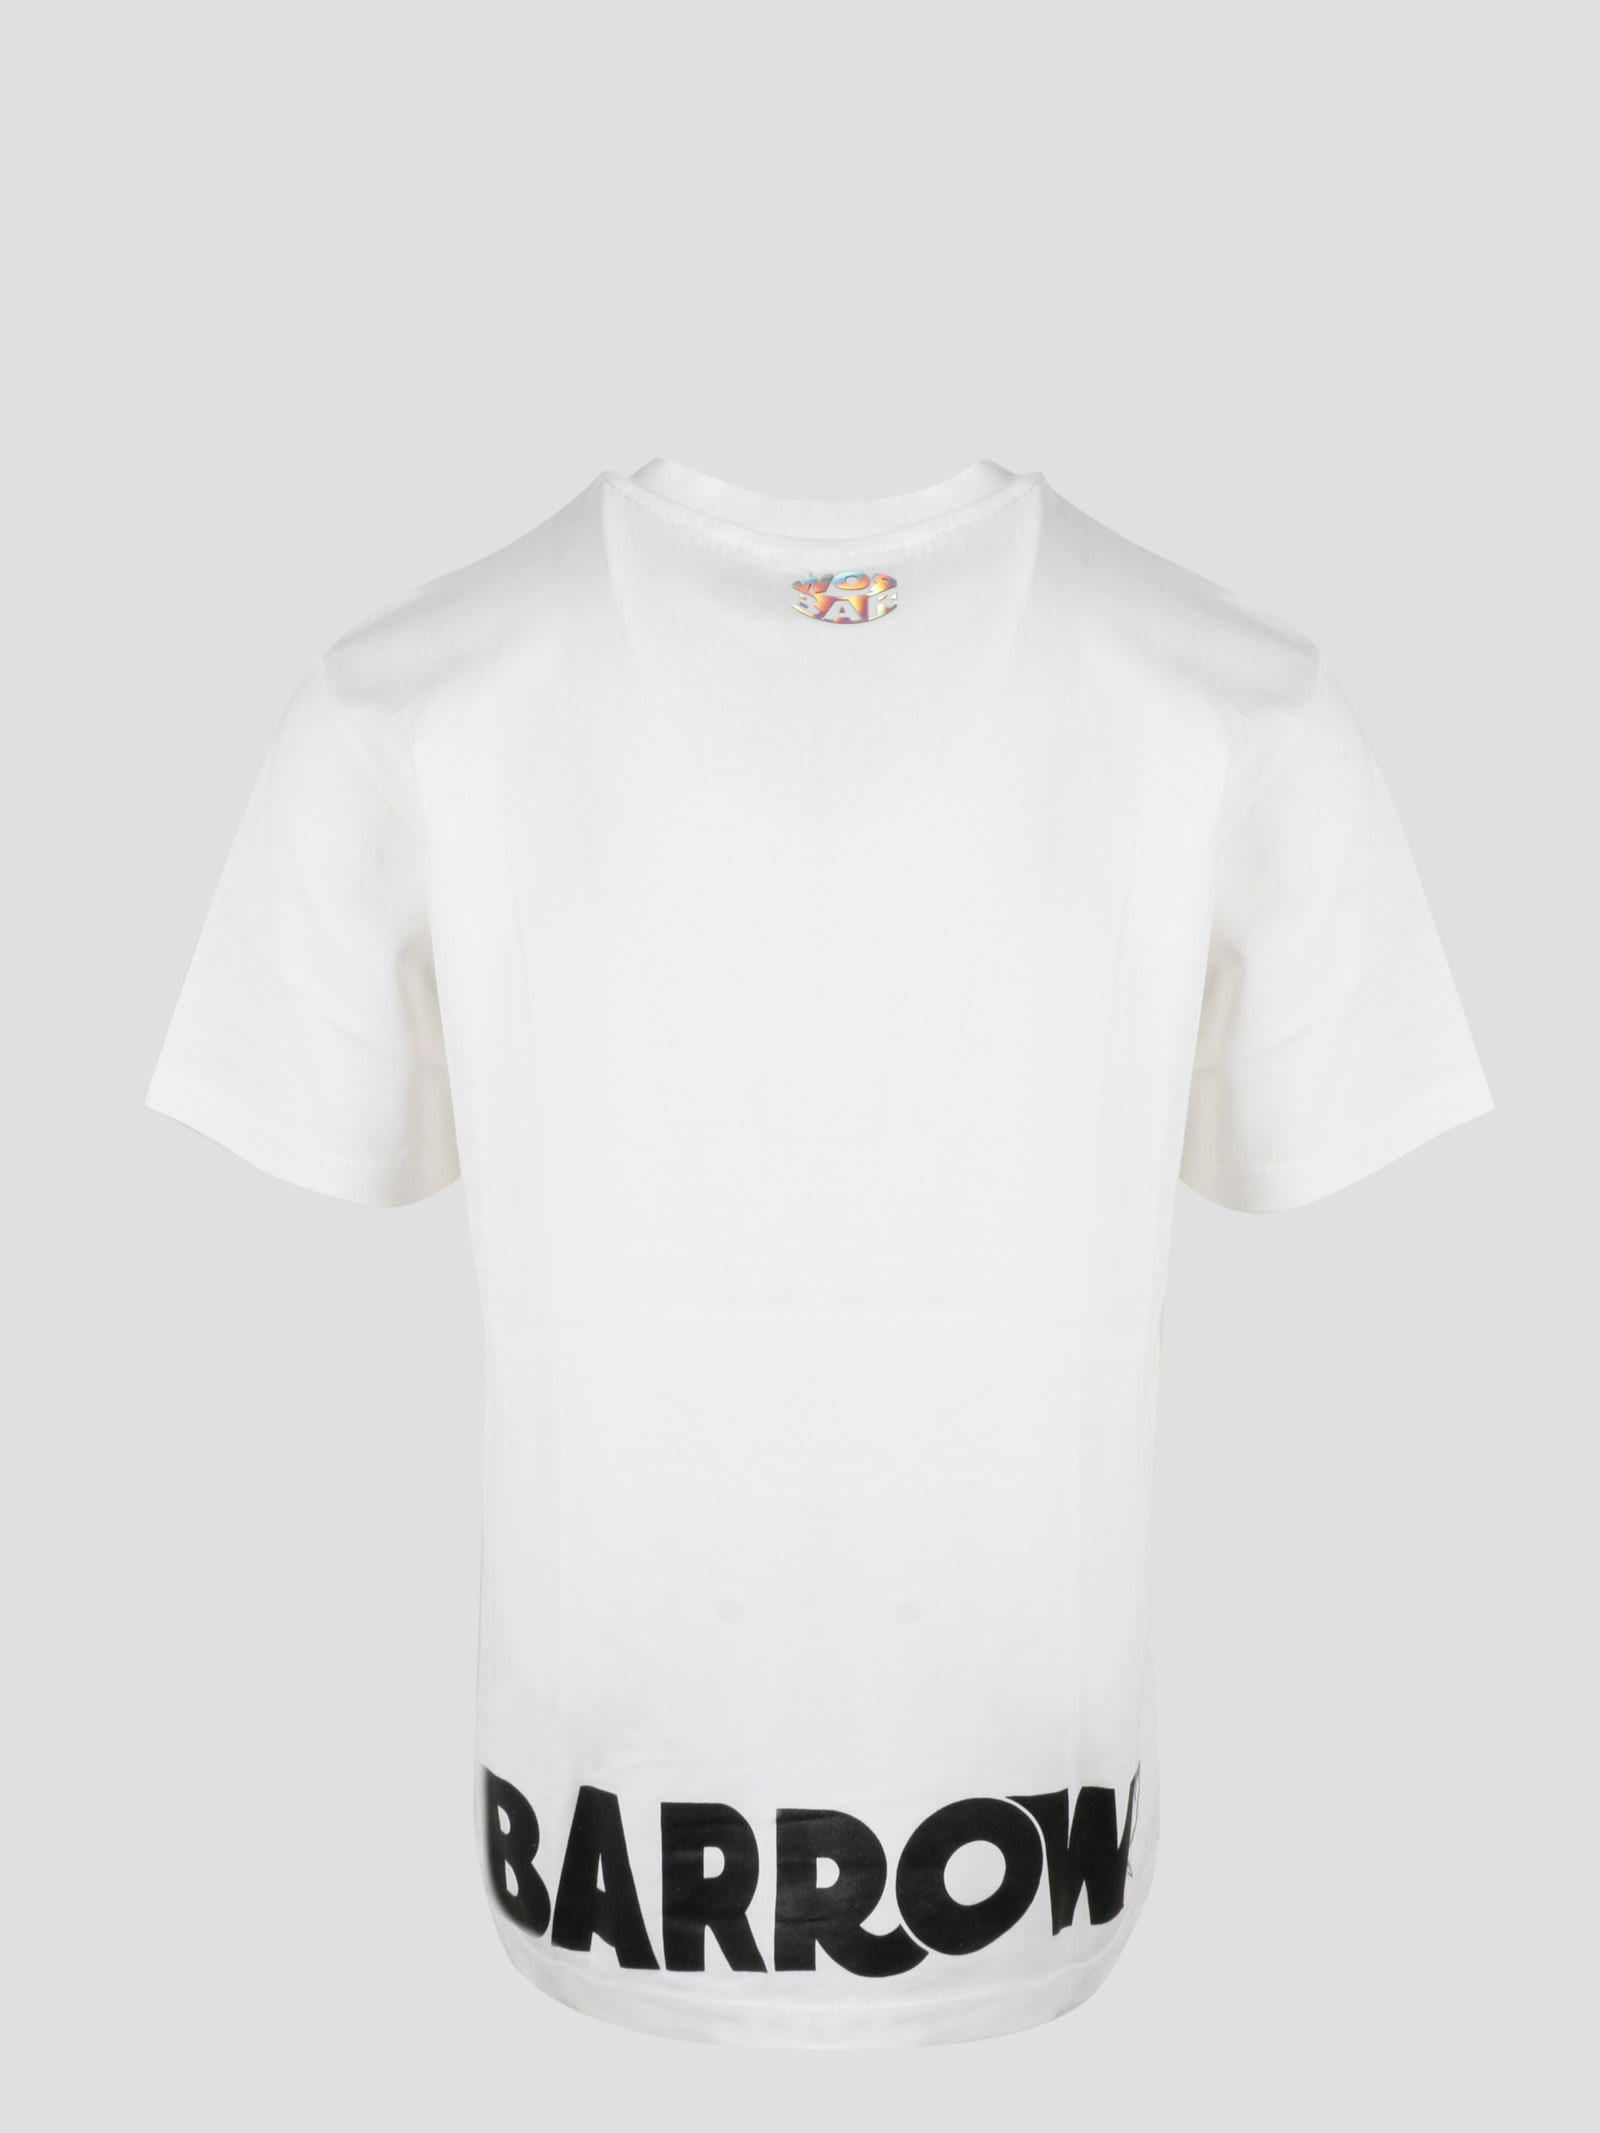 夏期間限定☆メーカー価格より68%OFF!☆ 半袖Tシャツ BARROW 32879